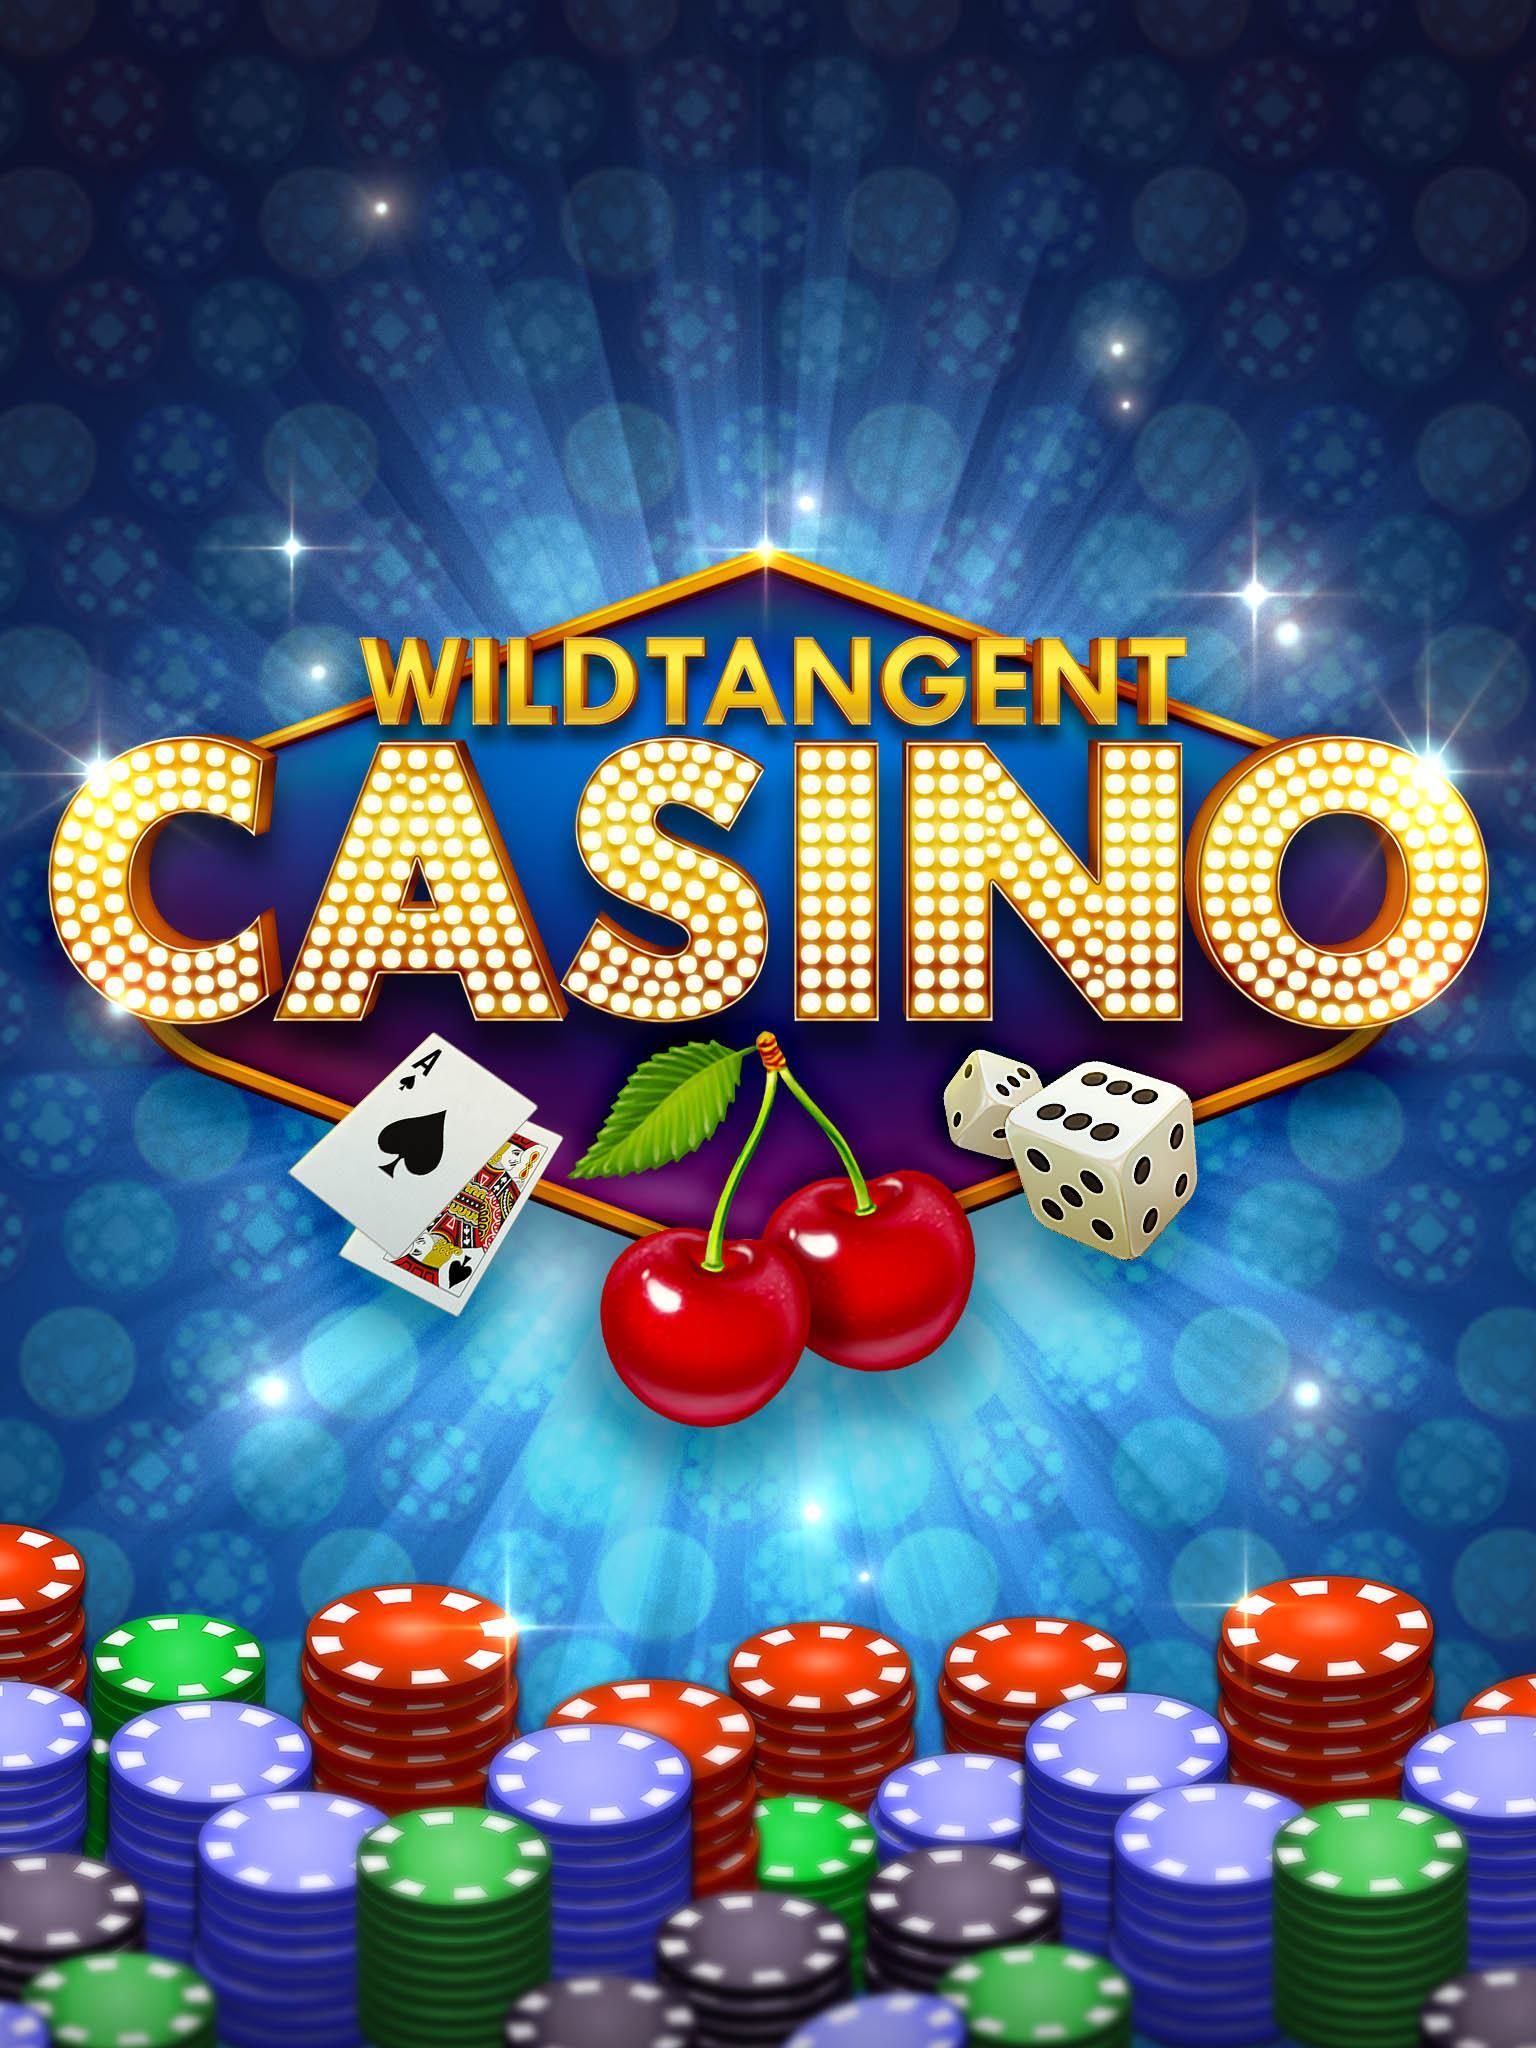 download online casino slots